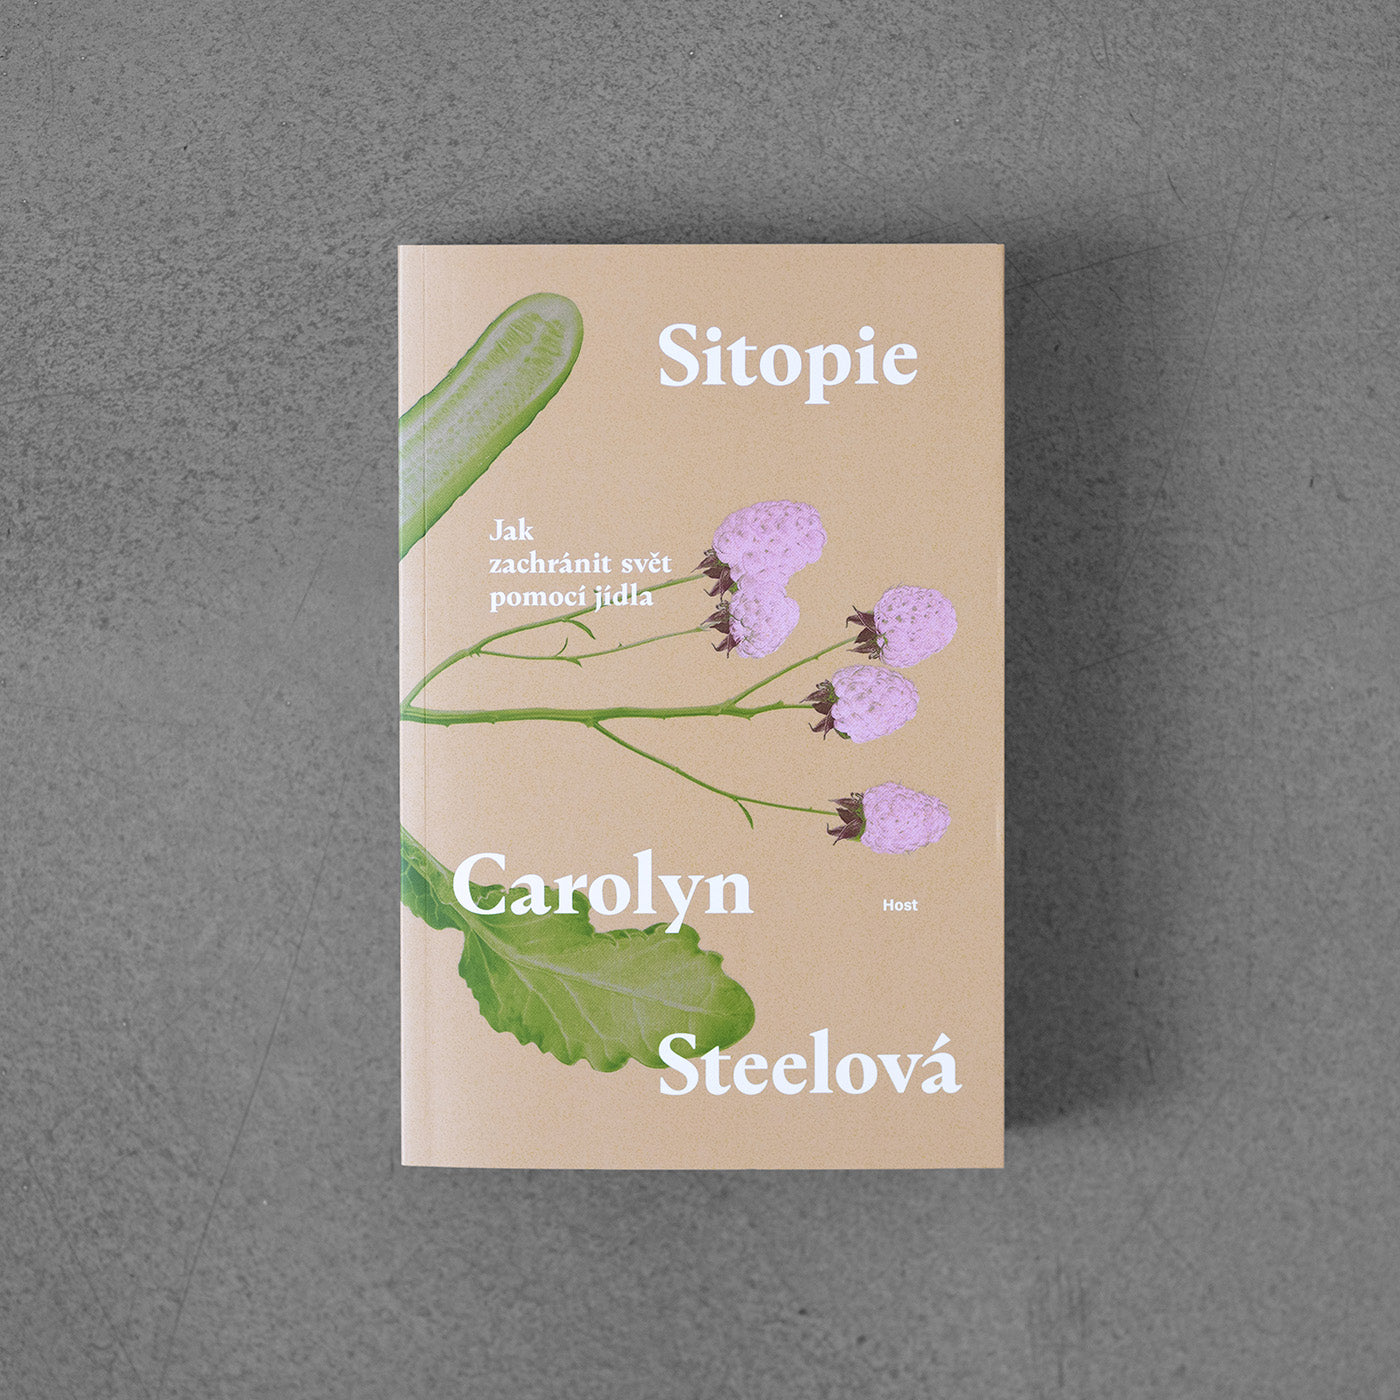 Sitopie - Carolyn Steel